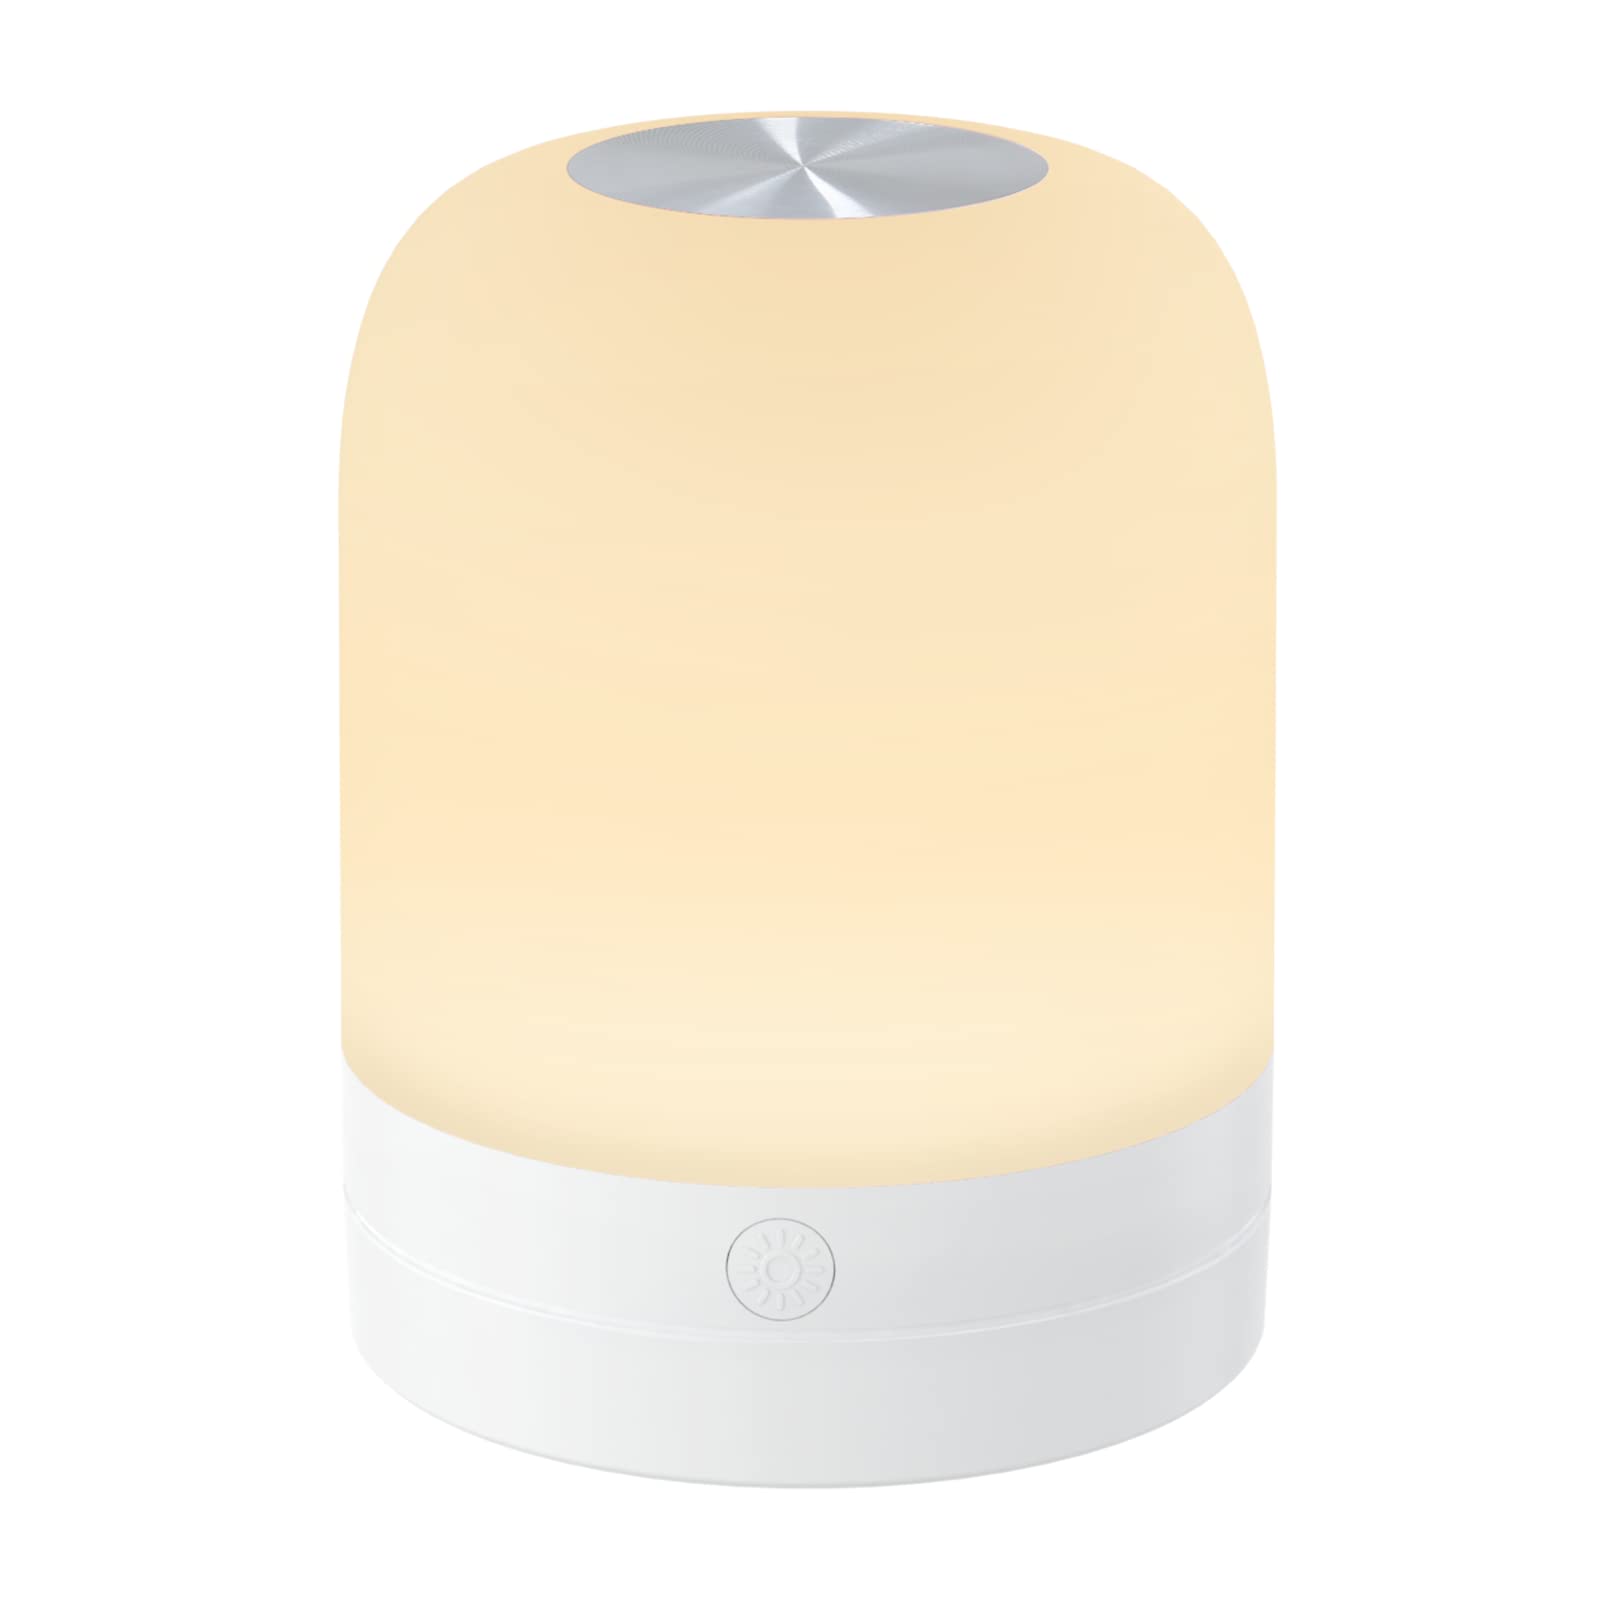 商品情報商品の説明主な仕様 【タッチセンサー式ナイトライト】このベッドサイドランプはタッチセンサー式なので、上部のタッチボタンで点灯・色温度や明るさを調節できます。暗闇の中で小さなスイッチを探すことなく、手探りでも簡単にスイッチを入れることができます。使いやすいランプで授乳用ライト・おむつ替え・夜中のトイレの照明として活躍できます。br【3色切替可能・無段階調光】本体の上部を1回押すと電源on/off、2回押すと電球色・温白色・昼白色が切り替えことができます。暖色系の光は目にやさしくて、夜間授乳やオムツ替えの時に最適なライトです。タッチセンサーを長押して無段階調光でき、読書を楽しむときは、問題なく文字を読む明るさに調整し、就寝時に点灯したままの場合は、睡眠時の気にならない明るさに調節します。br【充電式・コンパクト】ナイトライトには1200mAhのリチウム電池を搭載し、フル充電で6-100時間使用可能です。また、このランプは充電しながら使用することができ、ledランプなので長時間使用しても熱くならない。直径7cmの小さすぎない大きさは、枕元やベッドサイドにおいても邪魔にならず、ちょうどよい明るさを確保できます。br【メモリー機能・15分間タイマー付き】このランプは記憶機能を備えており、好みの色と明るさを自動的に記憶することができ、使う度に調光し直す必要がありません。また夜間に開けたときに突然の強い光で目が痛くなることはありません。15分間の自動消灯を簡単に設定でき、手動消灯が不要、自然と消灯して眠りを妨げません。br【取っ手付き・マグネット内蔵】底部に取っ手があるので、懐中電灯のように持って歩くことができ、吊るし照明としても使用可能です。またマグネットが内蔵しているので、いろいろなところにこのランプがおけてとても便利です。ランタンもしくは懐中電灯としても使用可能な2WAY仕様でナイトライト、ベッドサイドランプ、授乳ライトとしての使用に最適です。br仕様：?7 x 7 x 9.1 cm; 100 g。メーカーより1年間の保証期間があります。使用中に何か故障があったらいつでも連絡してください。